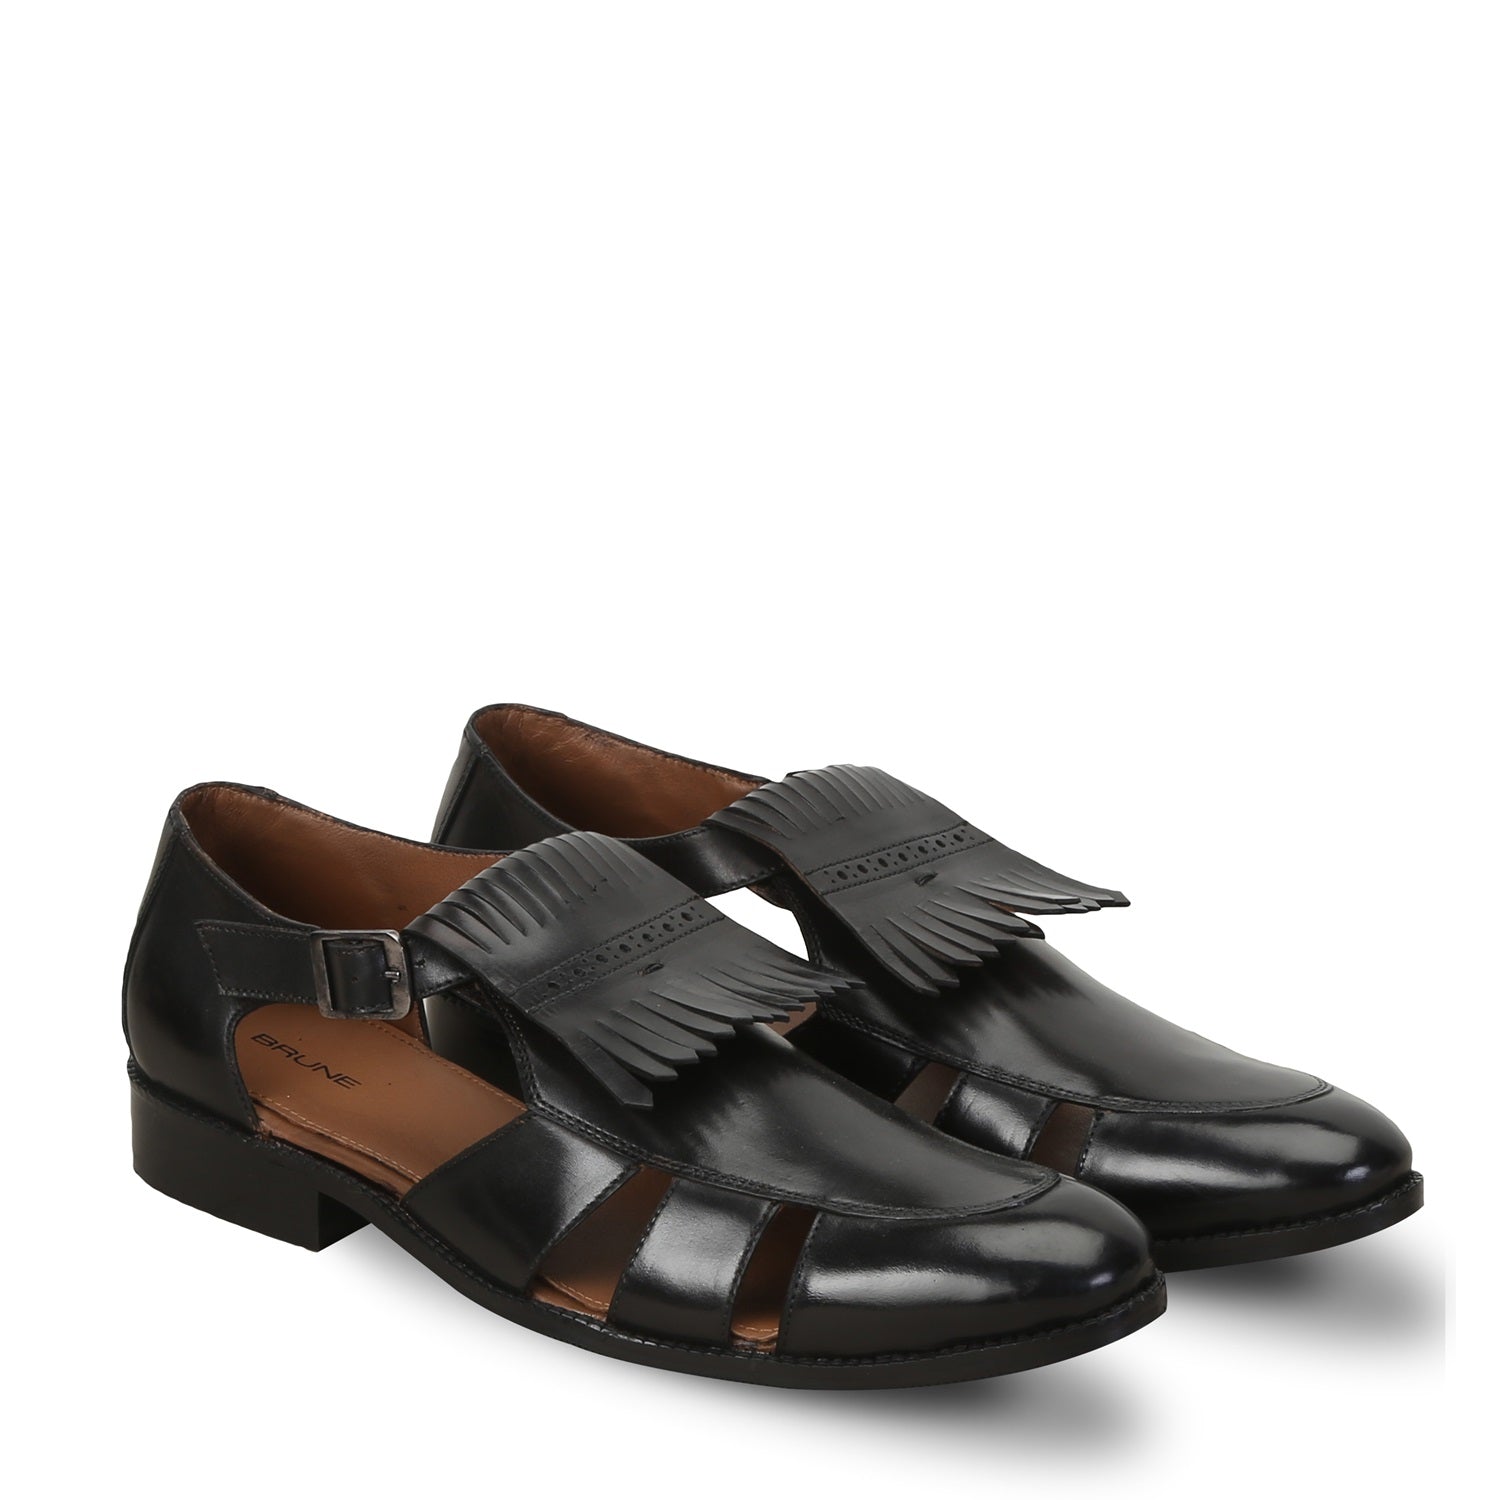 Black Leather Formal Sandals With Fringes Design For Men